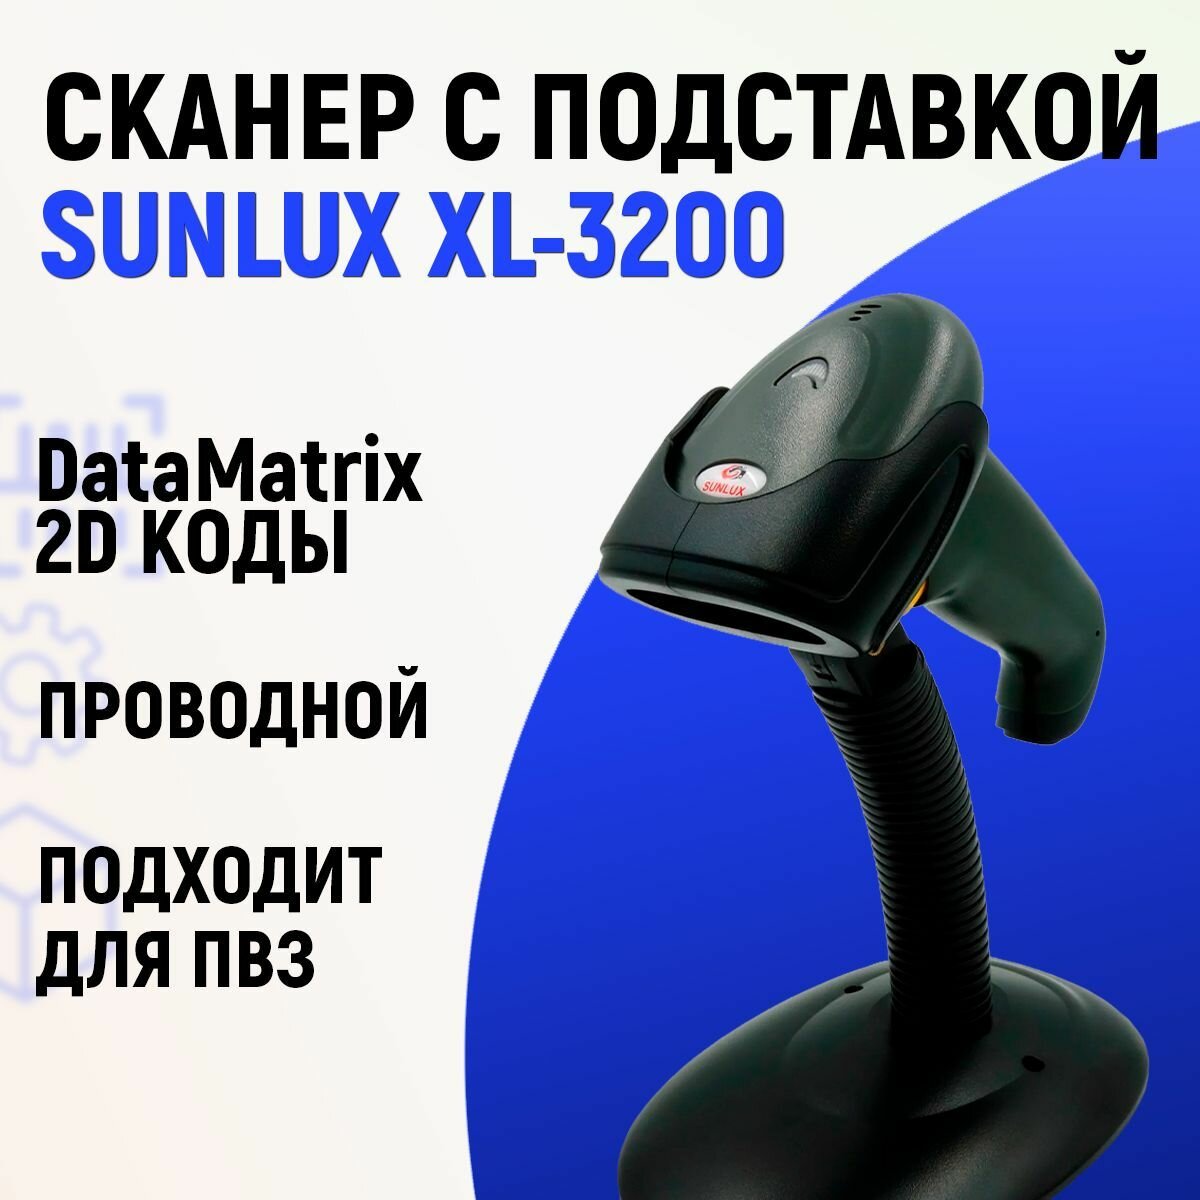 Проводной 2D сканер штрих кода SUNLUX XL-3200 + подставка для маркировки ЕГАИС Честный знак QR Эвотор Атол Меркурий 1D PDF417 DATA MATRIX